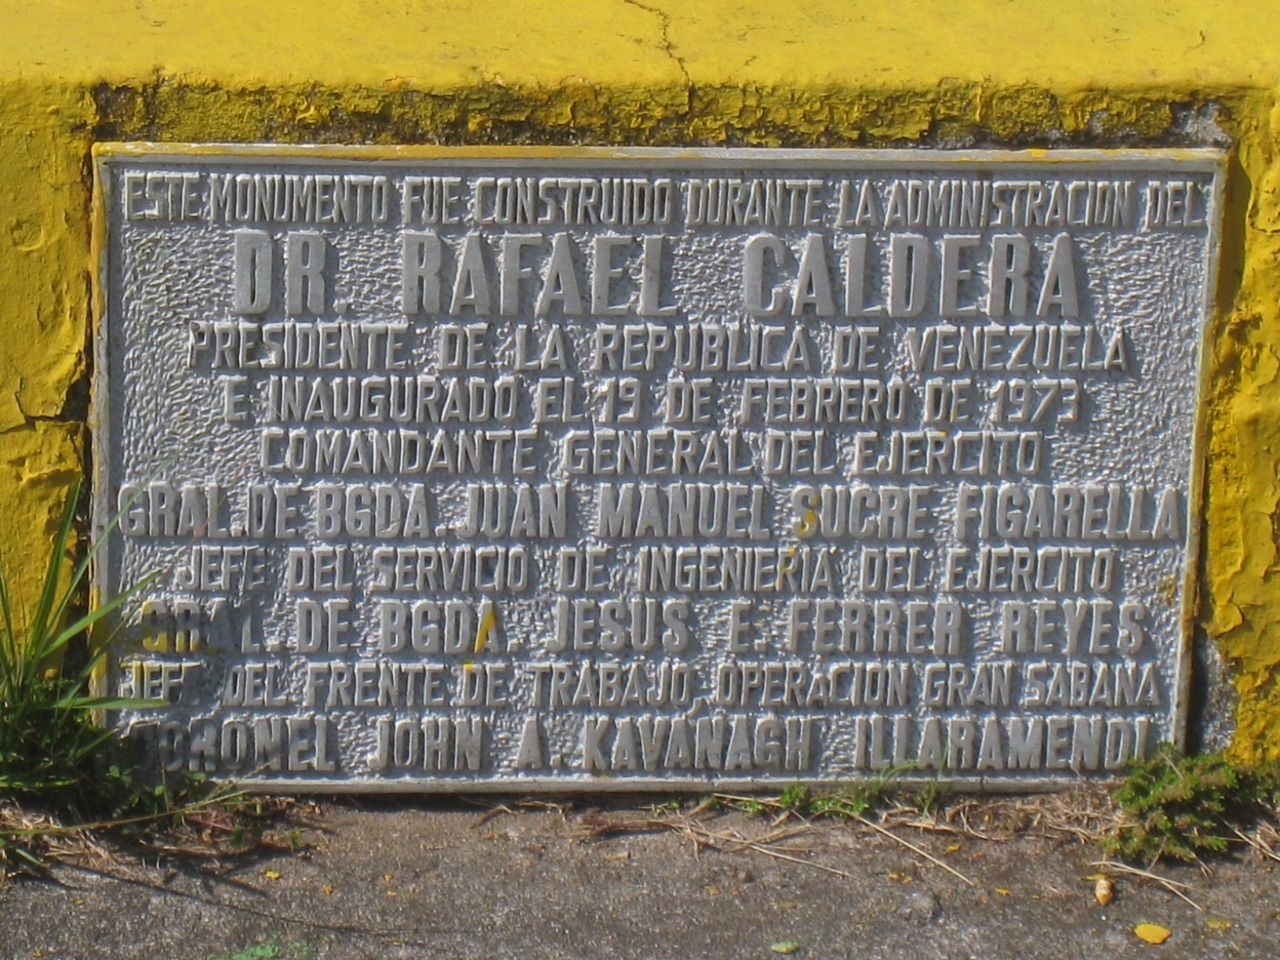 Цитадель, памятник солдату-пионеру и местные маландрос. Ч.40 Национальный парк Канайма, Венесуэла